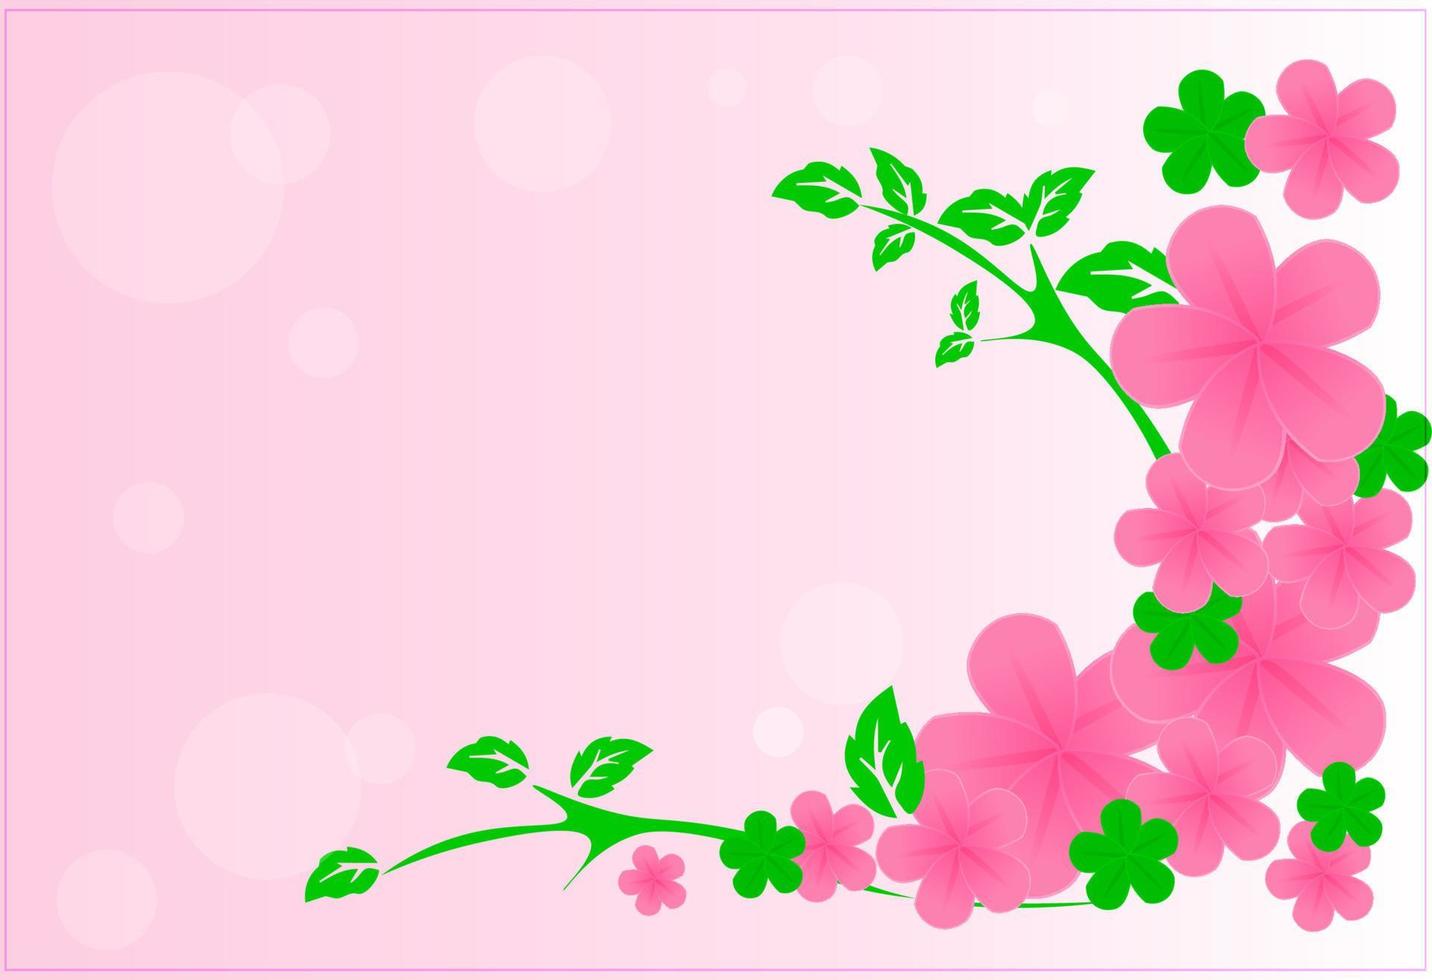 arte de marco de hojas verdes y flores rosadas sobre fondo de papel rosa vector